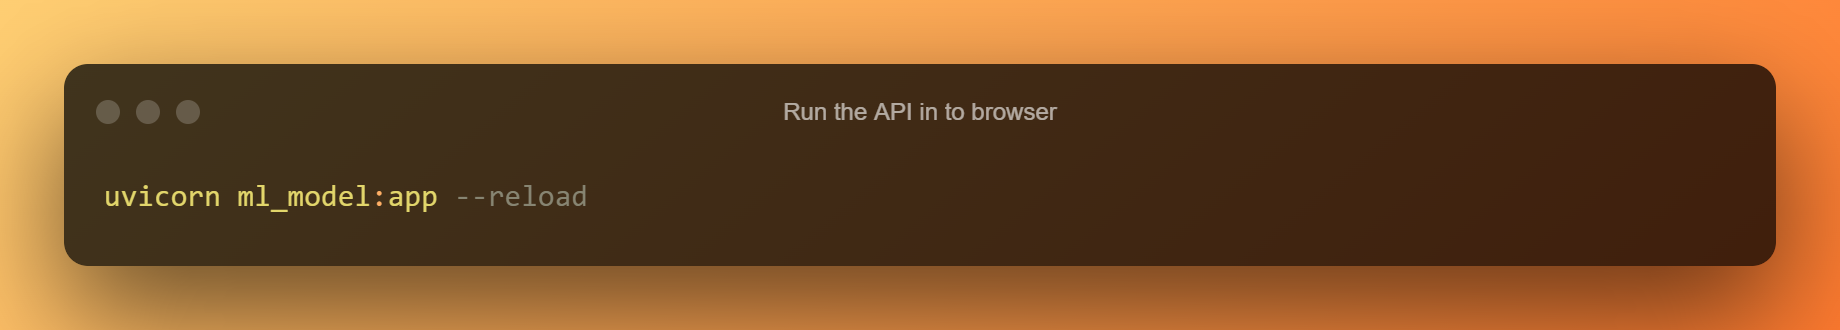 Rulați API-ul în browser